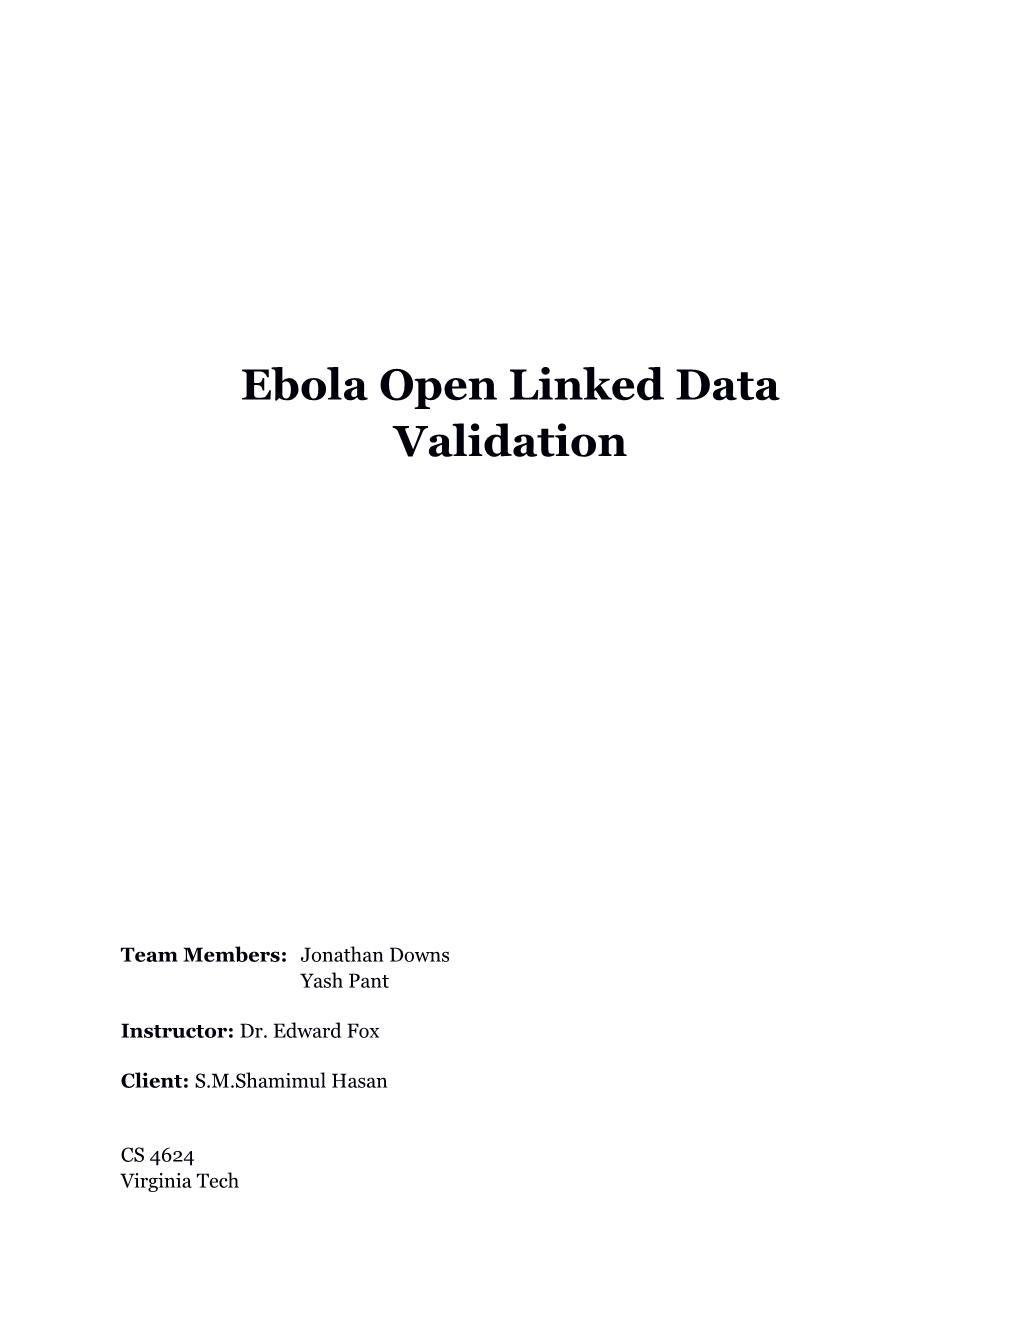 Ebola Open Linked Data Validation